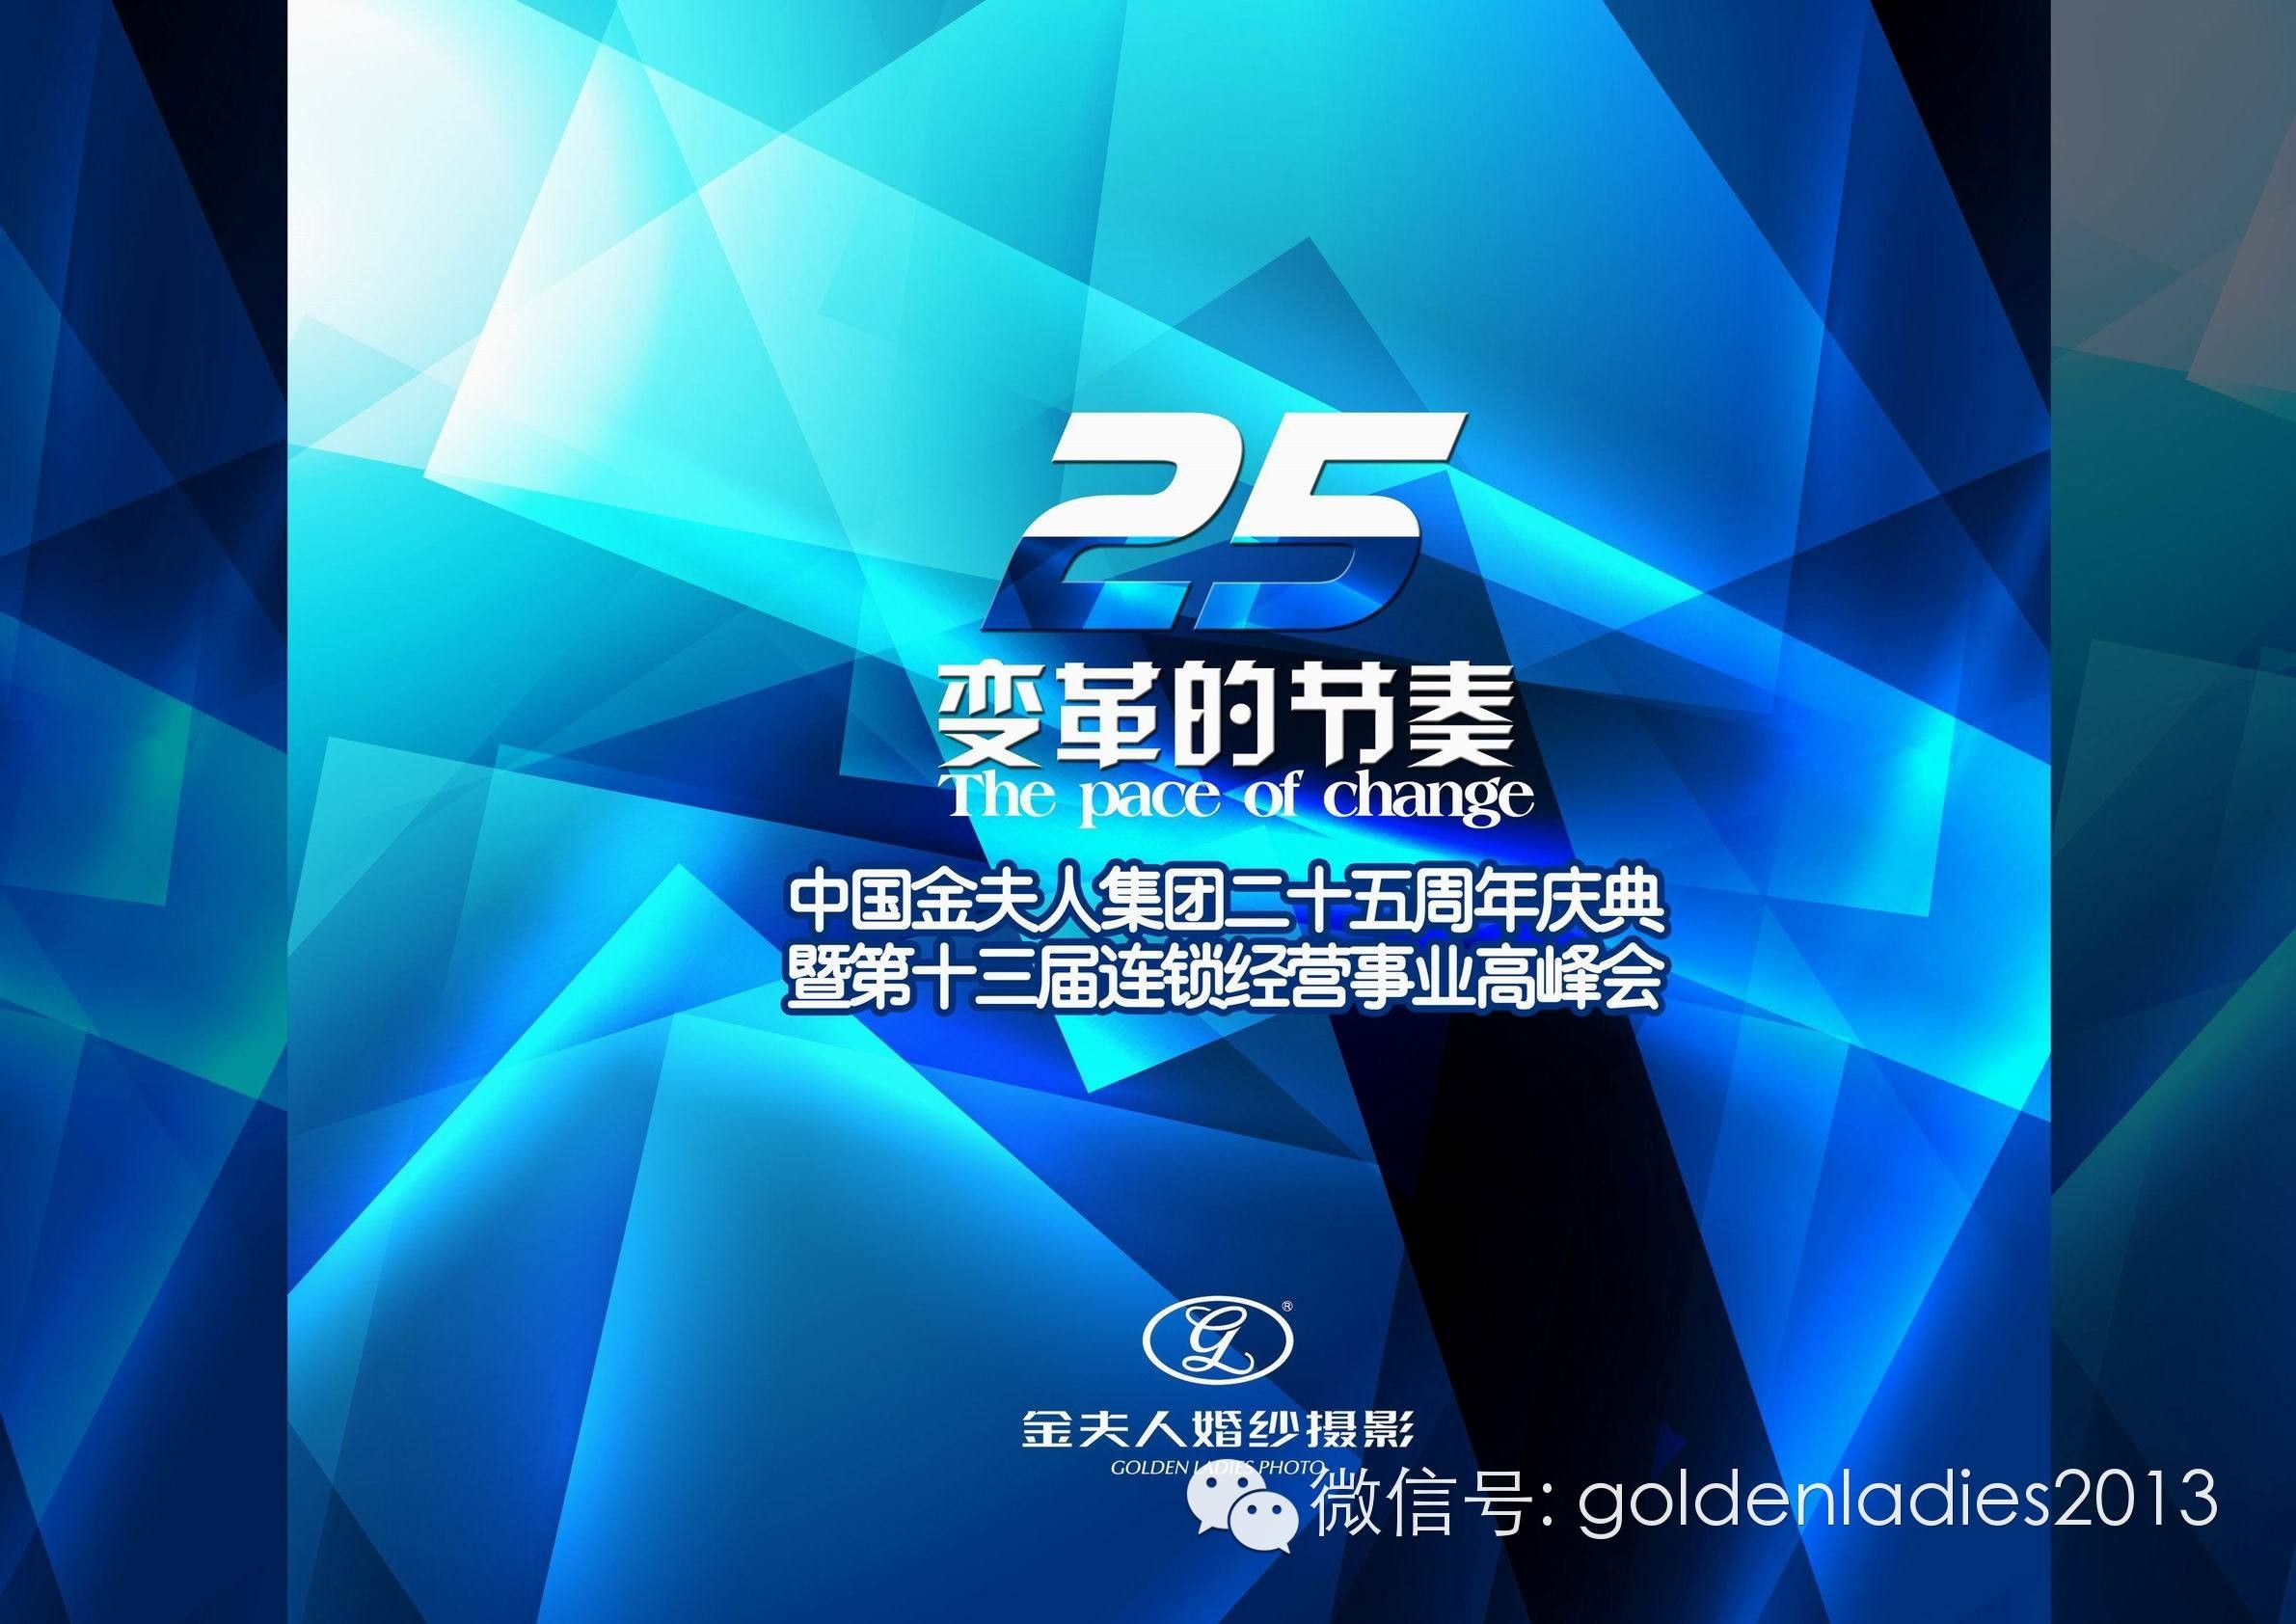 中国金夫人集团二十五周年庆典第十三届连锁经营事业高峰会